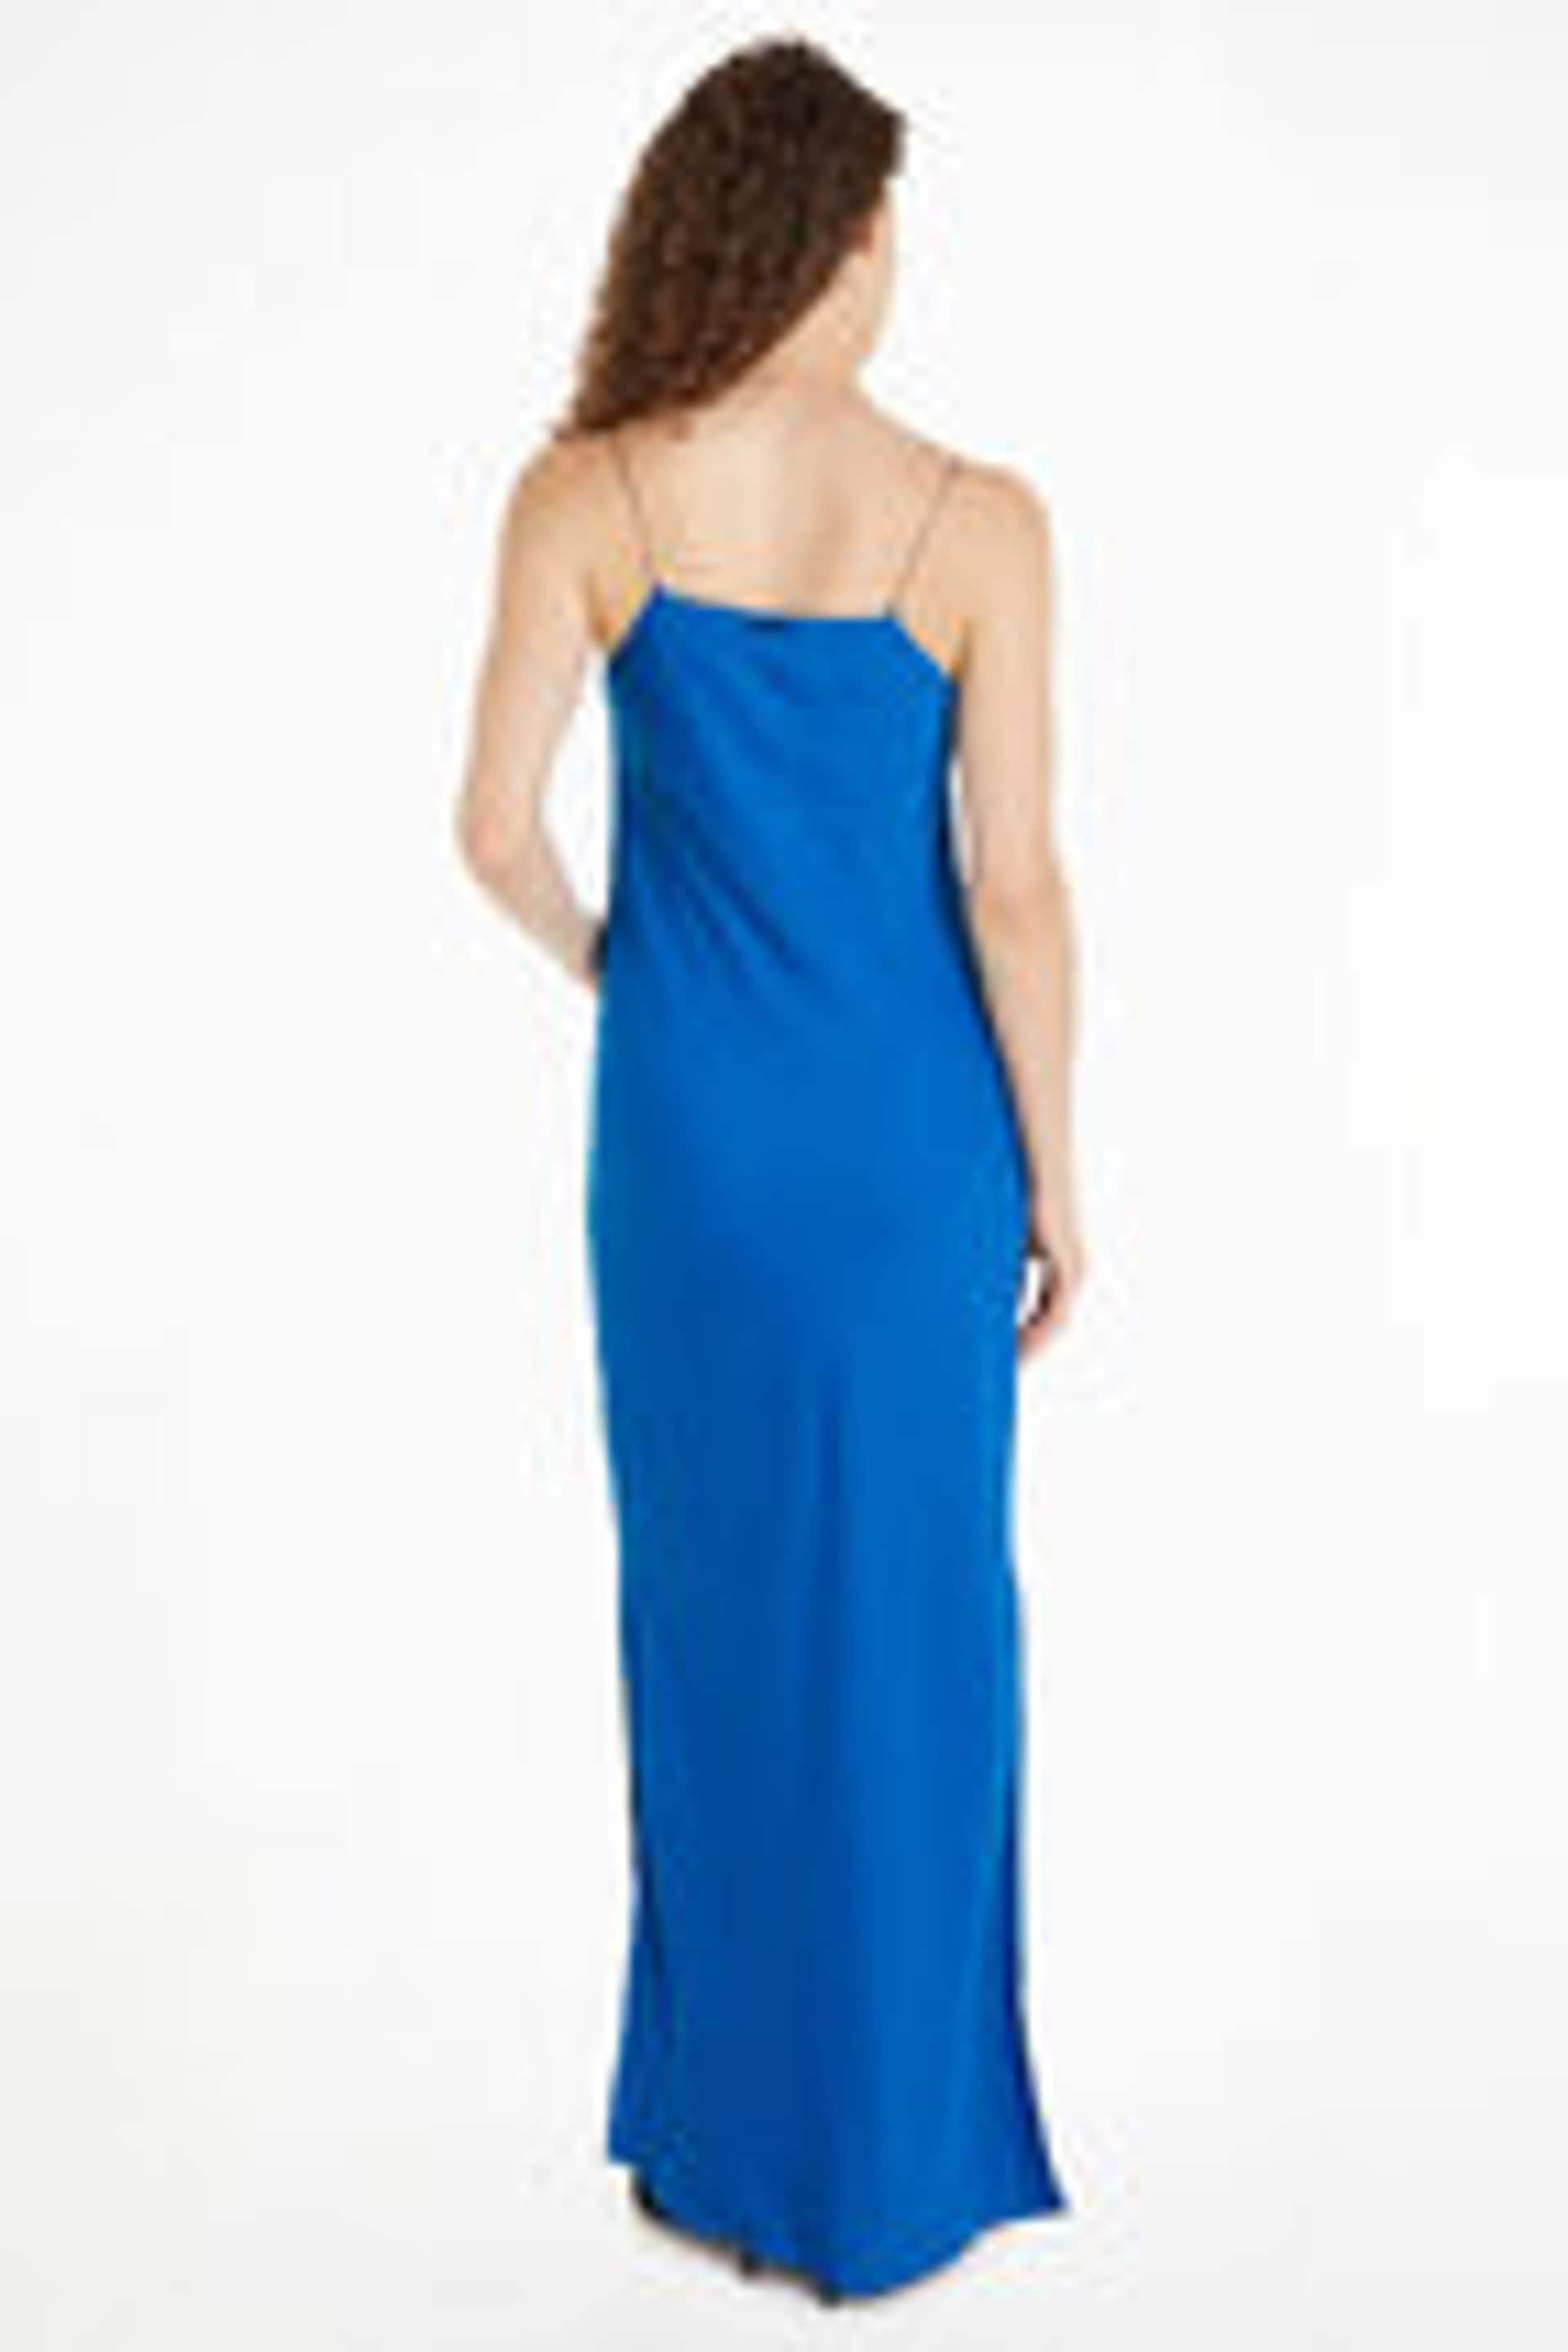 Calvin Klein Blue Metal Detail Slip Dress - Image 2 of 3